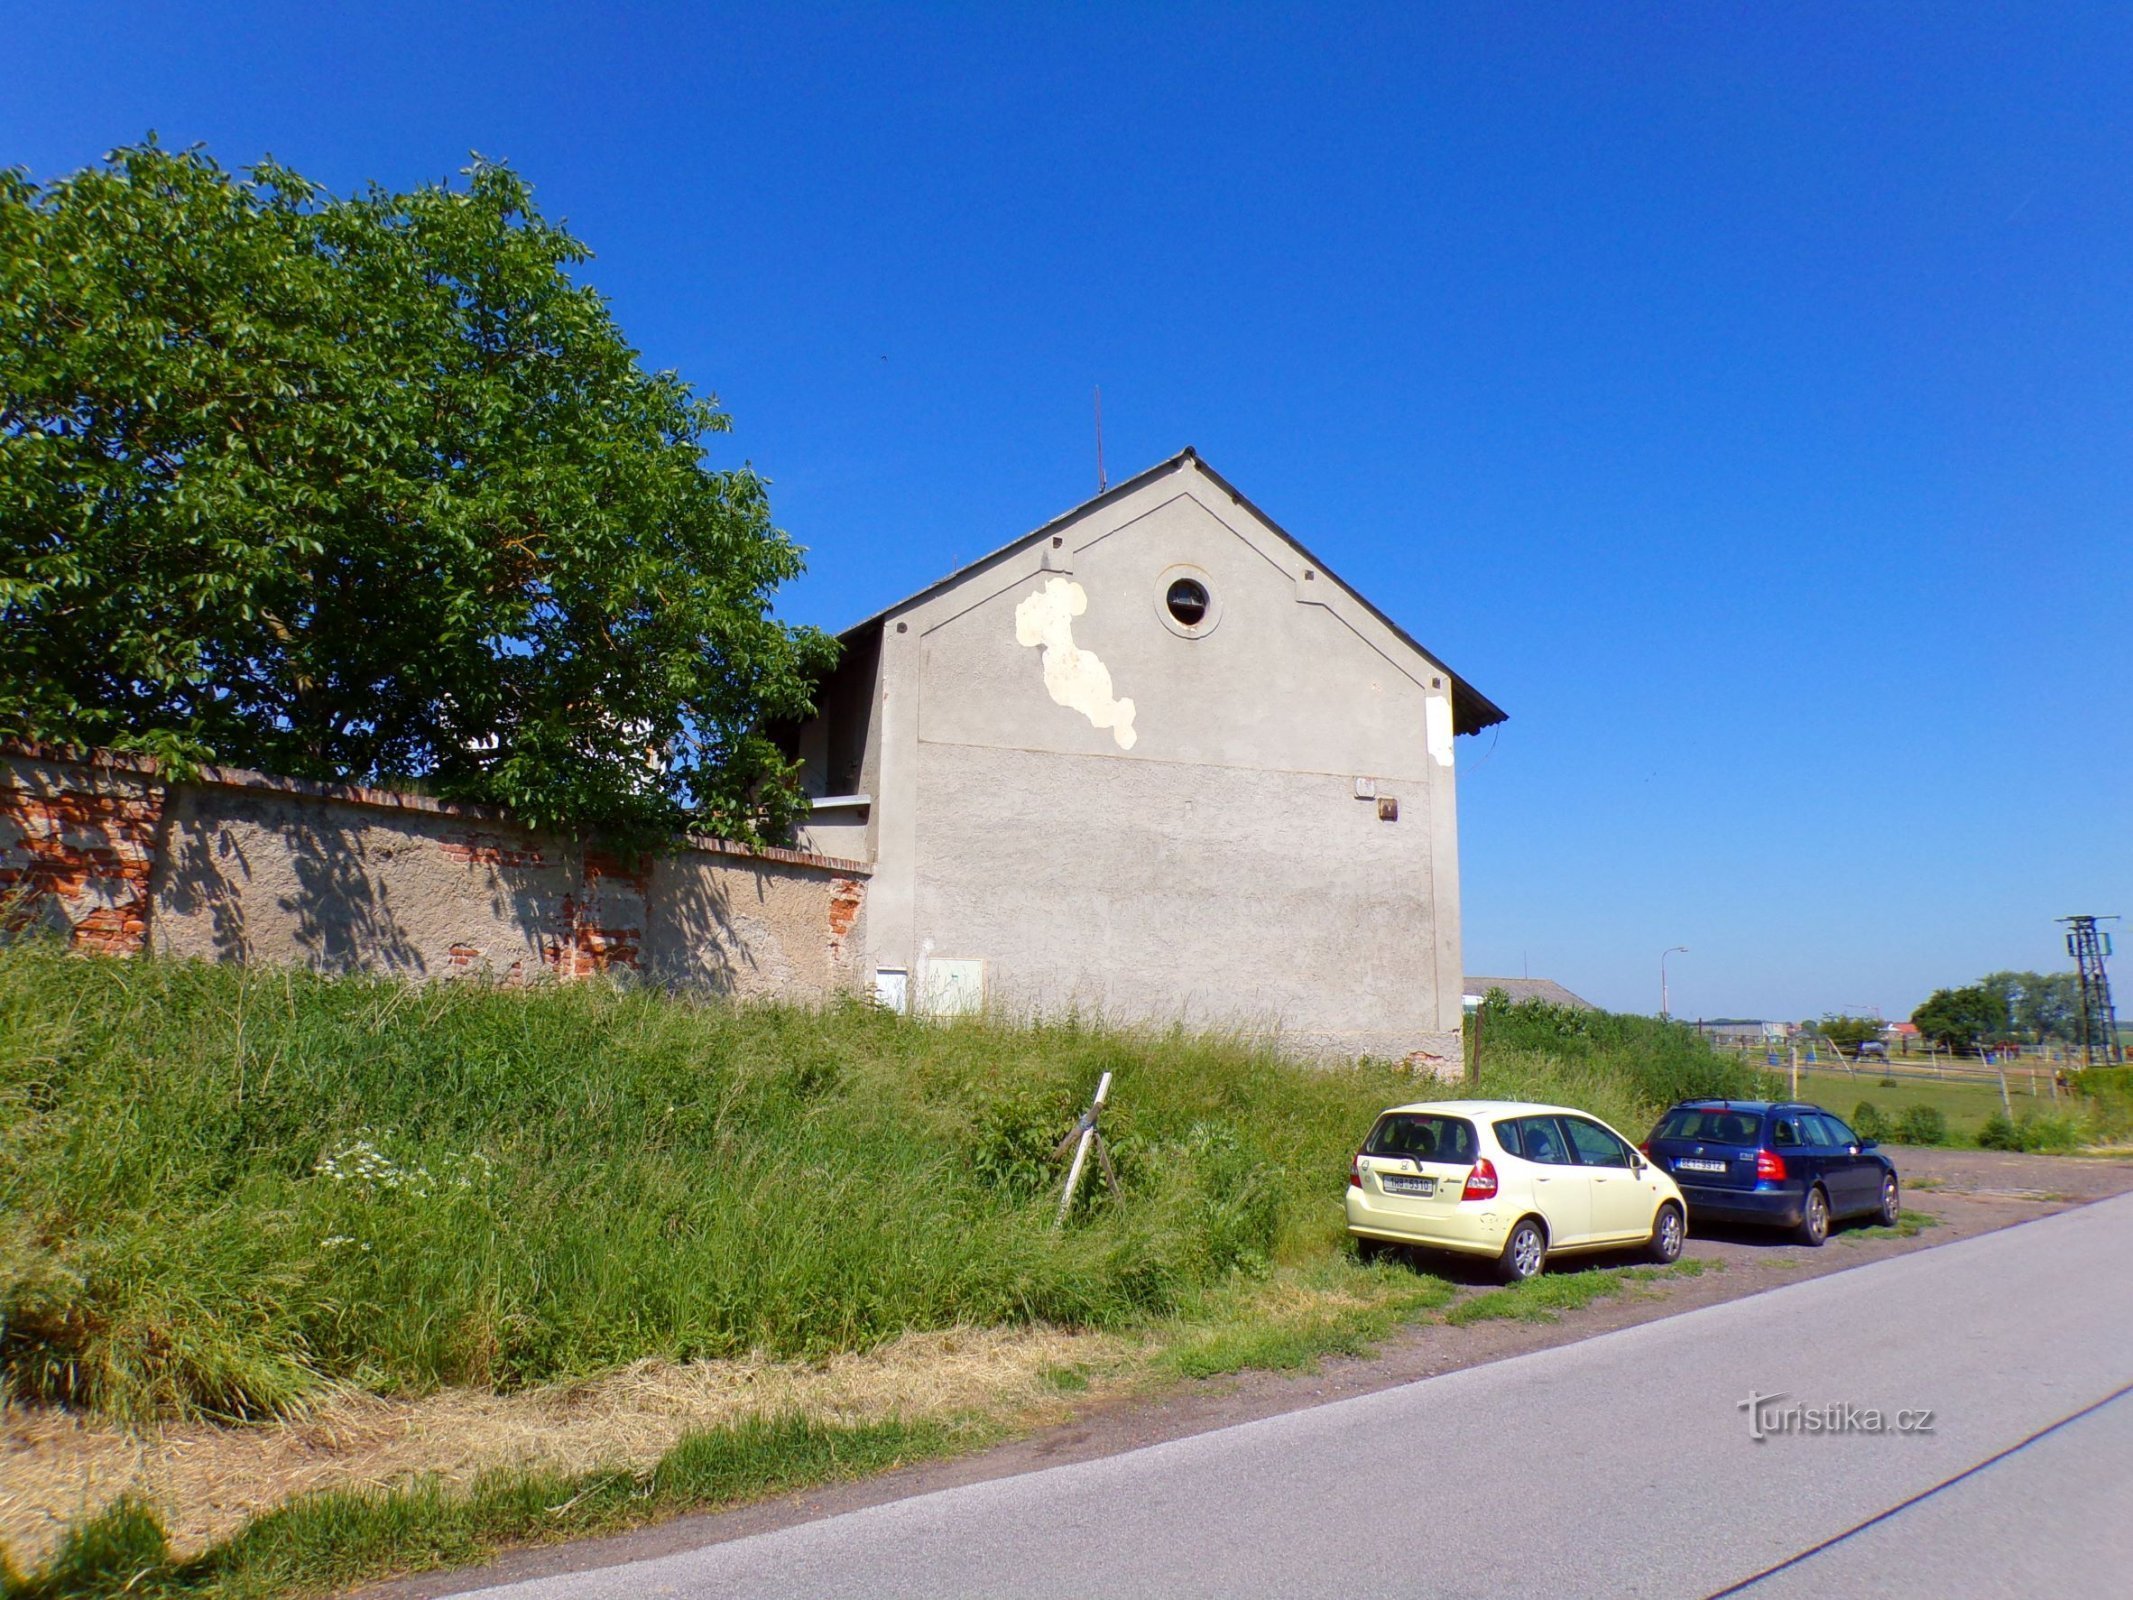 Een deel van de voormalige rechtbank van Trésice (Kosice, 5.6.2022 juni XNUMX)